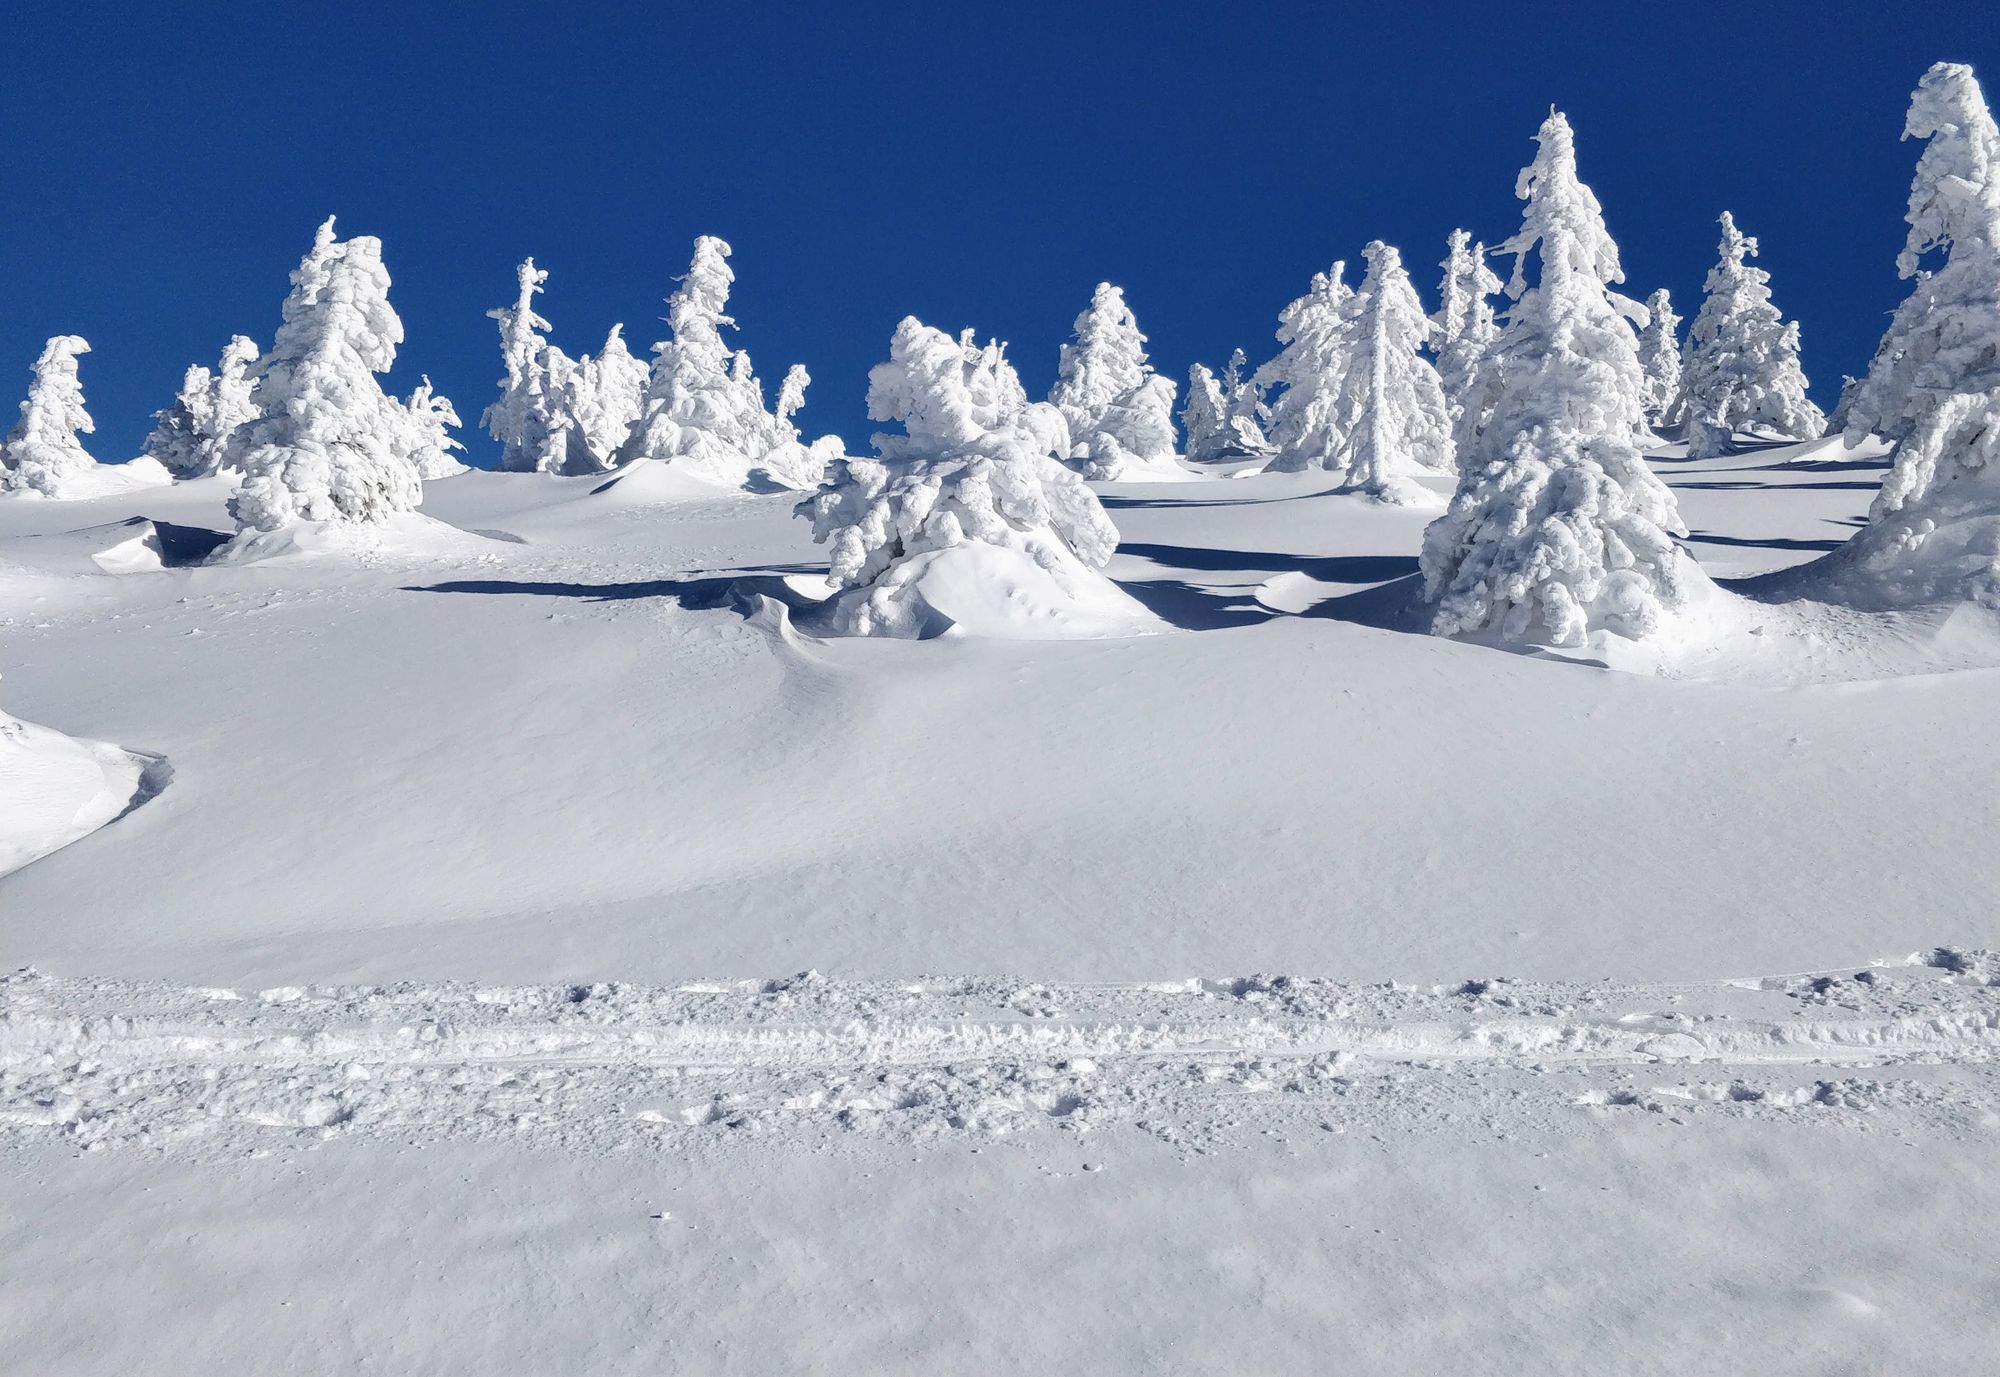 Vârf cu surpriză: Vlădeasa, din Rogojel, pe zăpadă (Ian 2022)